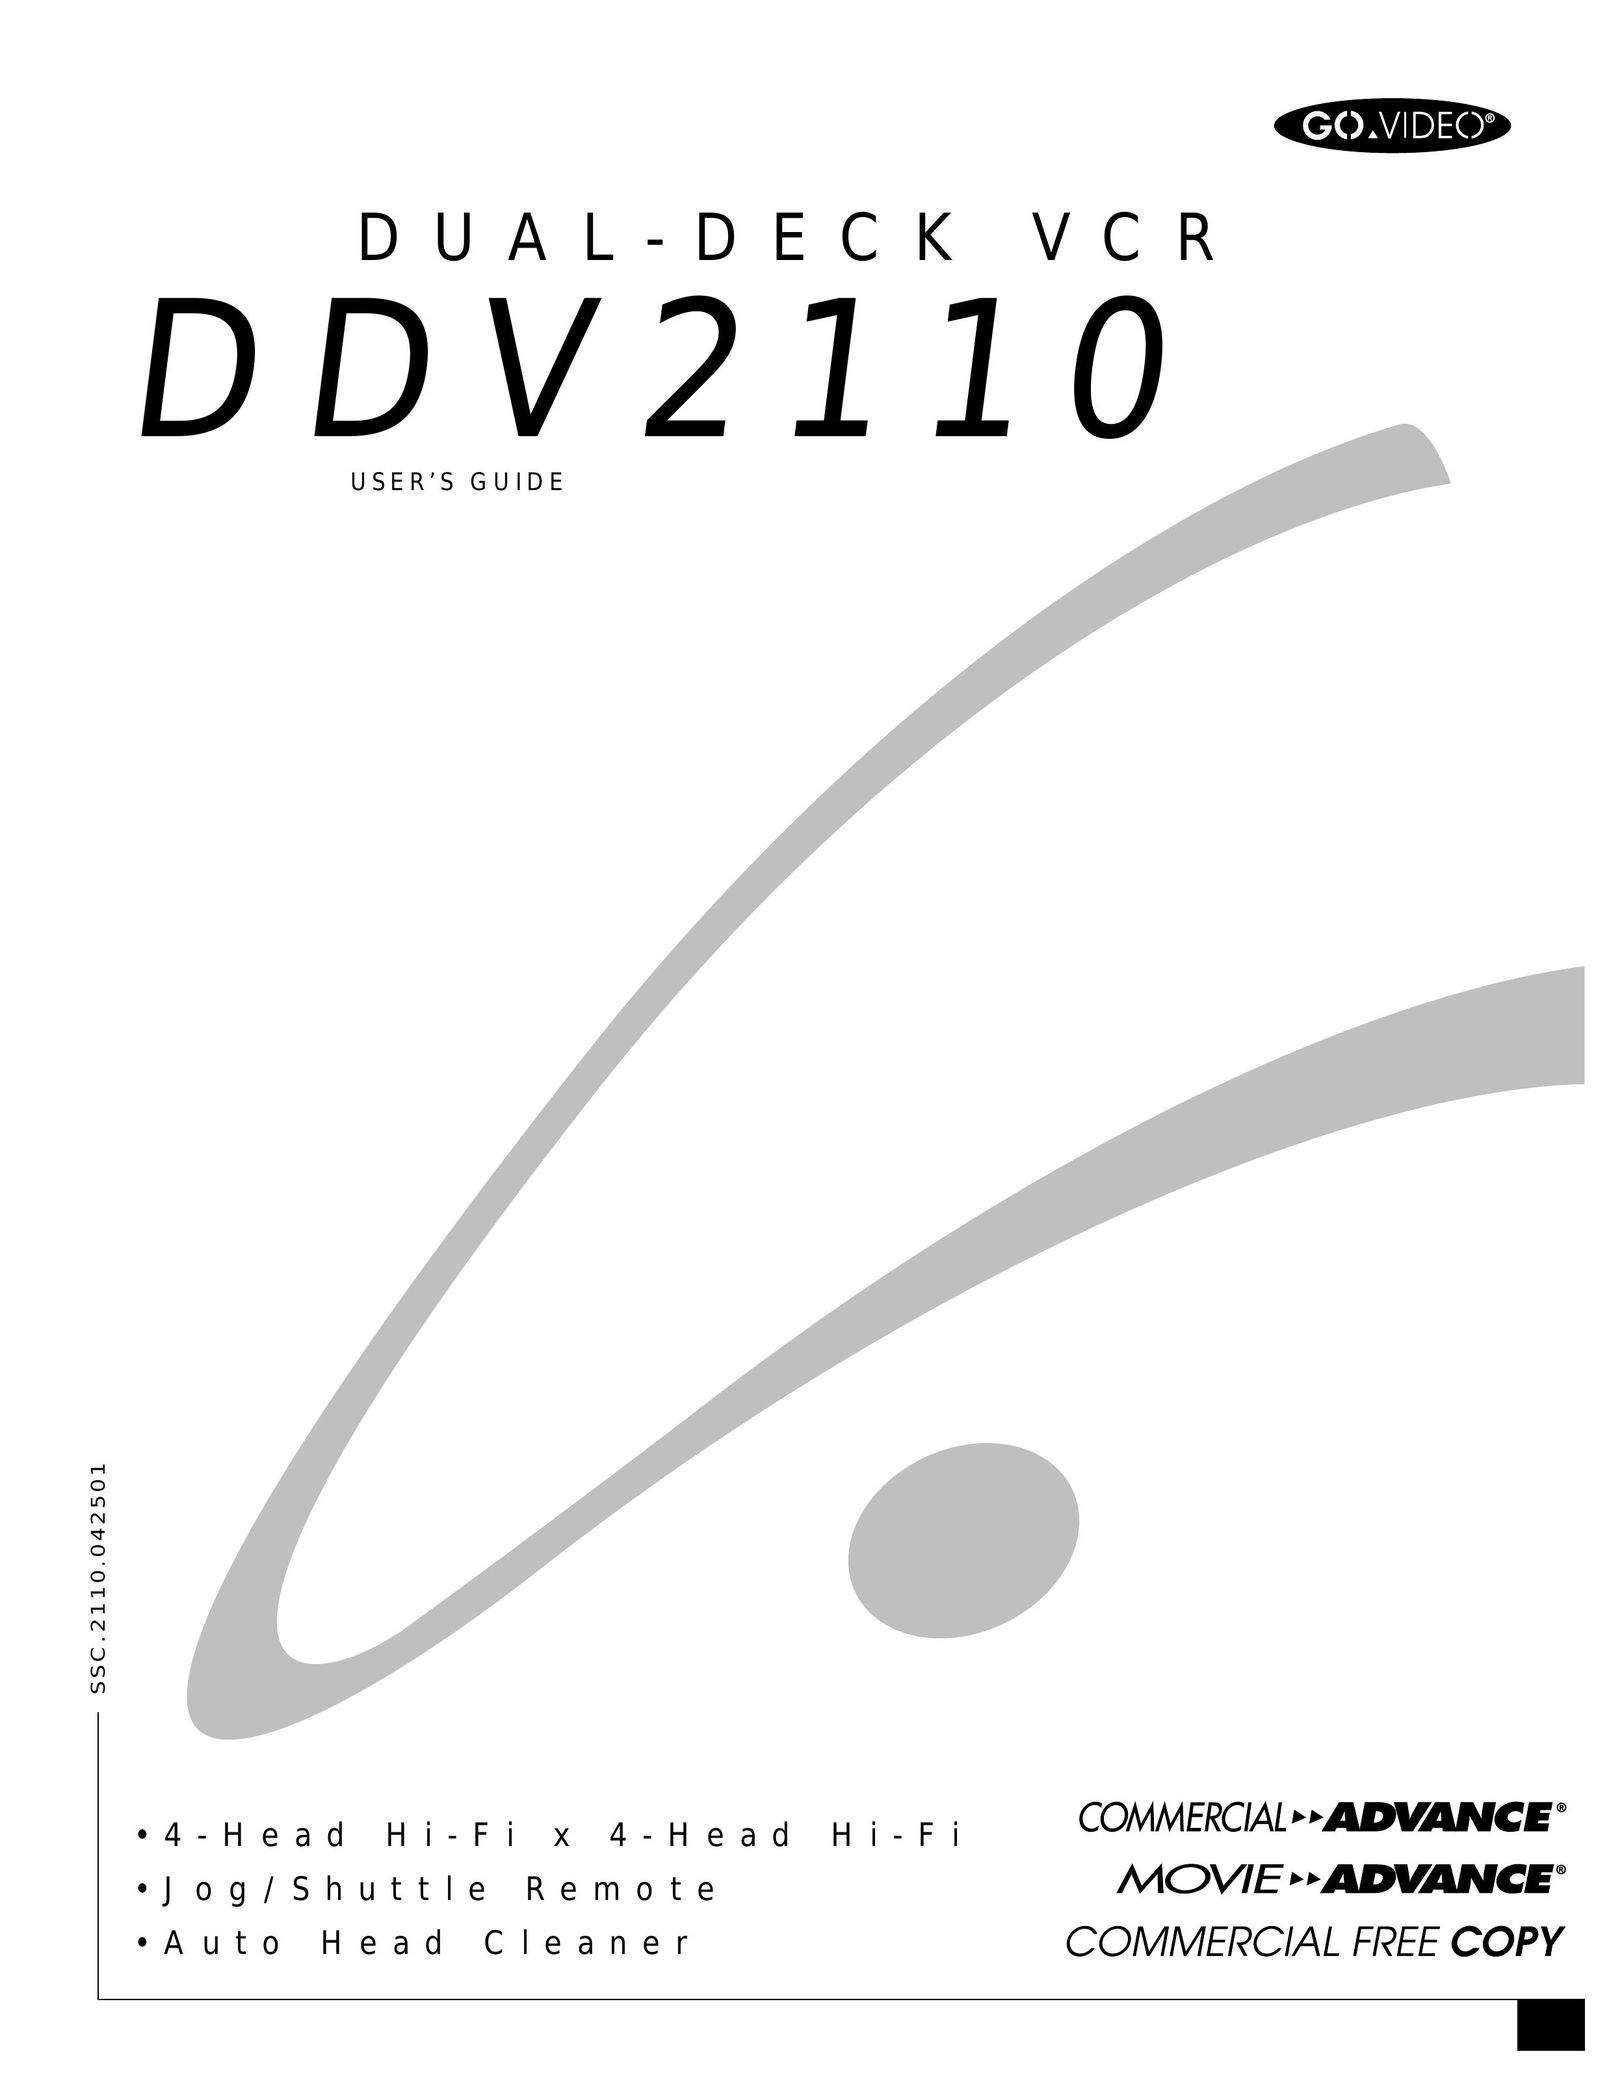 GoVideo DDV 2110 VCR User Manual